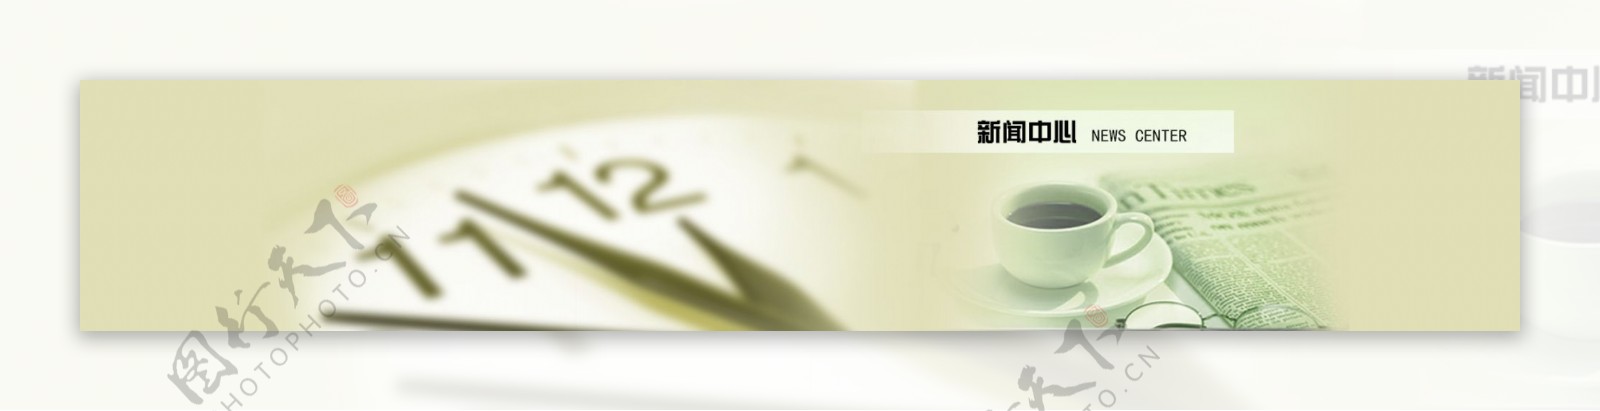 新闻中心banner